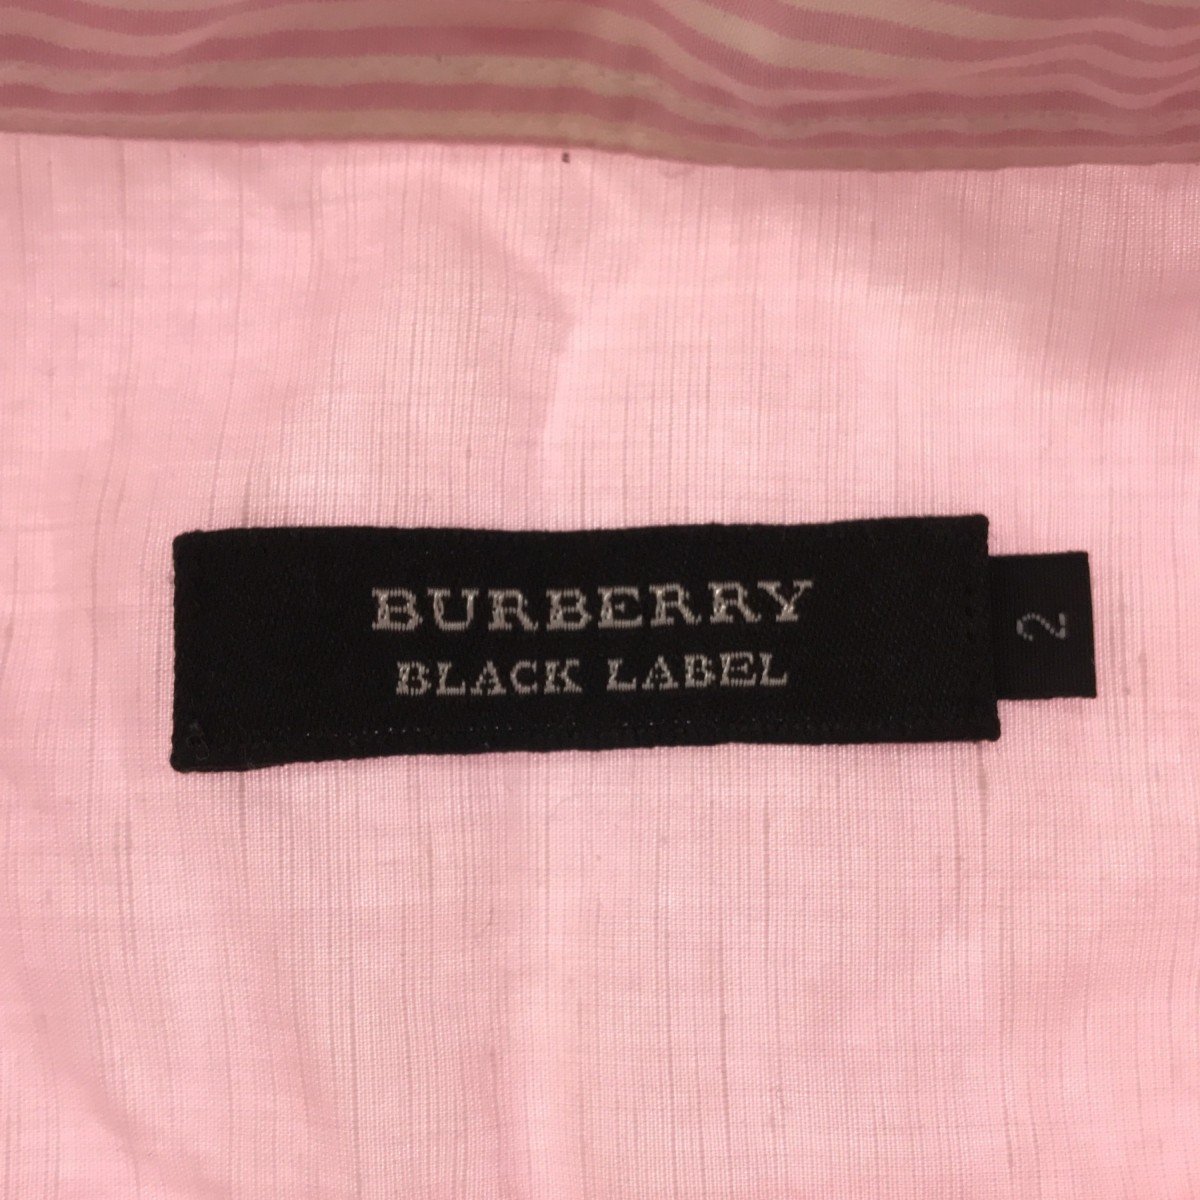 ◆中古品◆BURBERRY BLACK LABE Lバーバリーブラックレーベル 半袖シャツ ピンク サイズ2 メンズ シャツ 半袖 ボタン D38738NSC_画像3